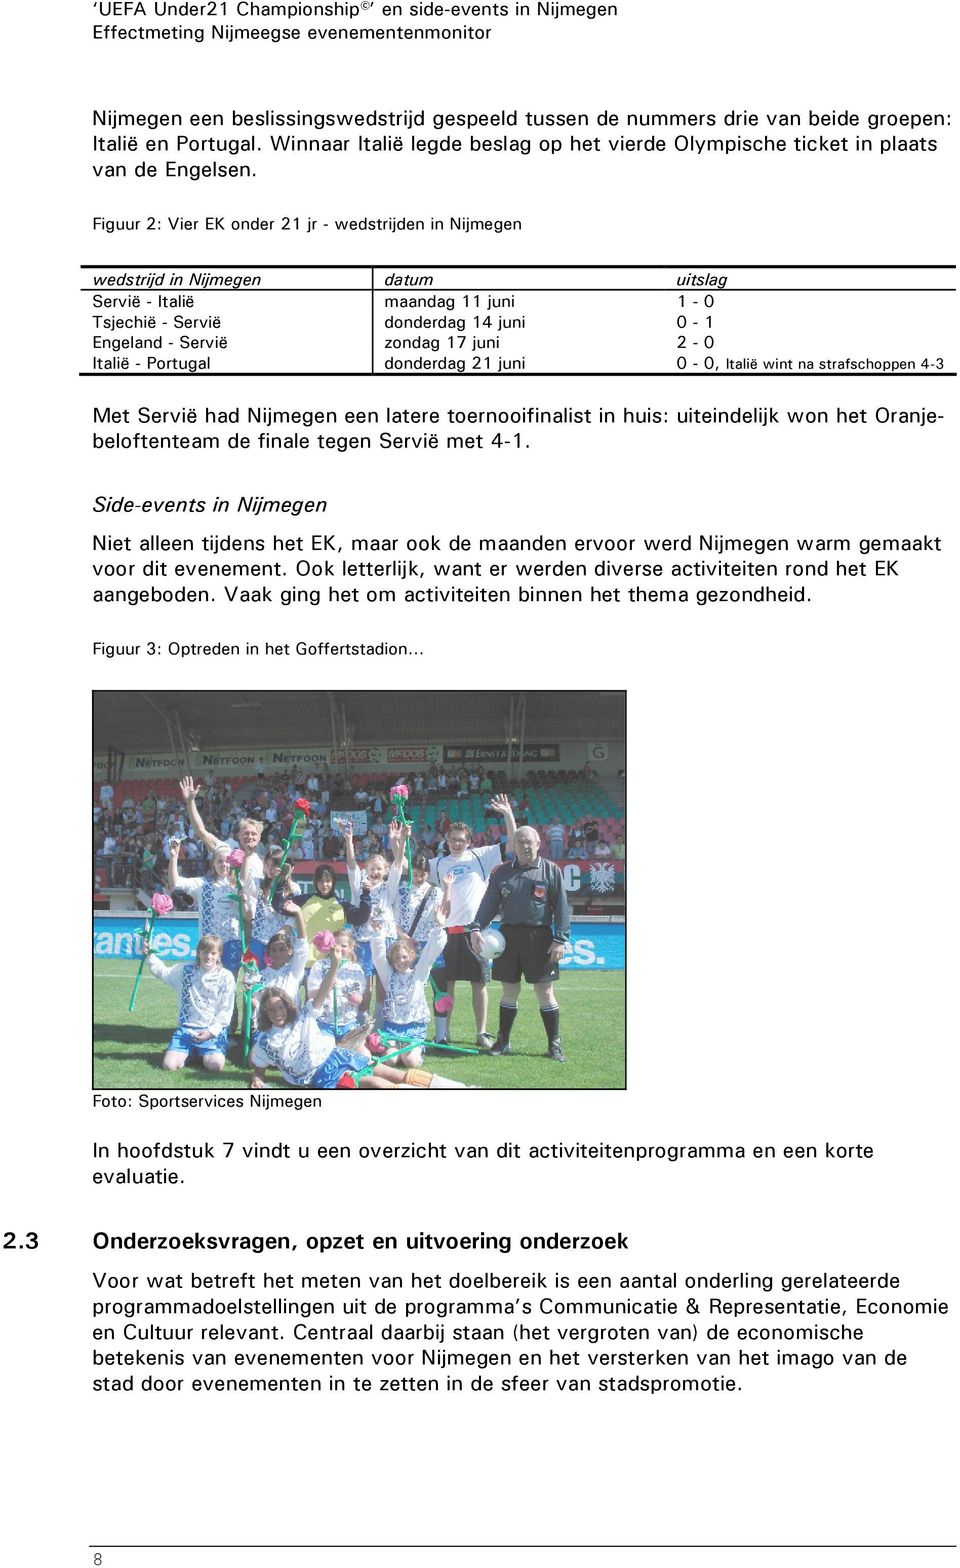 Figuur 2: Vier EK onder 21 jr - wedstrijden in Nijmegen wedstrijd in Nijmegen datum uitslag Servië - Italië maandag 11 juni 1-0 Tsjechië - Servië donderdag 14 juni 0-1 Engeland - Servië zondag 17